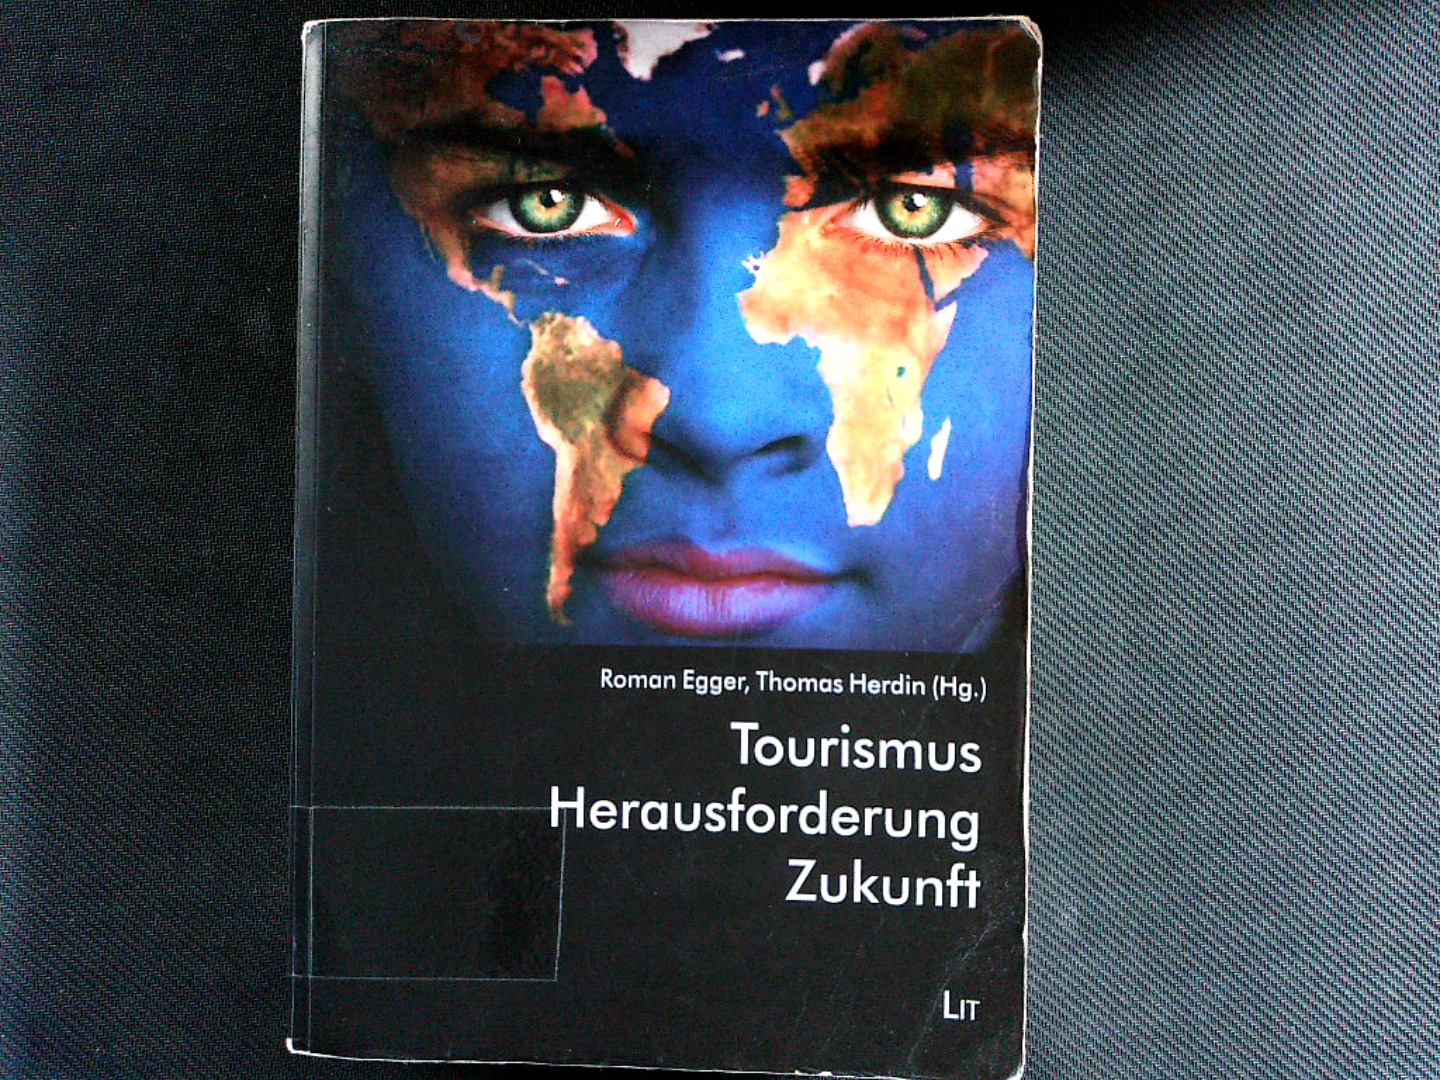 Tourismus - Herausforderung - Zukunft. (Wissenschaftliche Schriftenreihe des Zentrums für Tourismusforschung - Salzburg). - Egger, Roman und Thomas Herdin